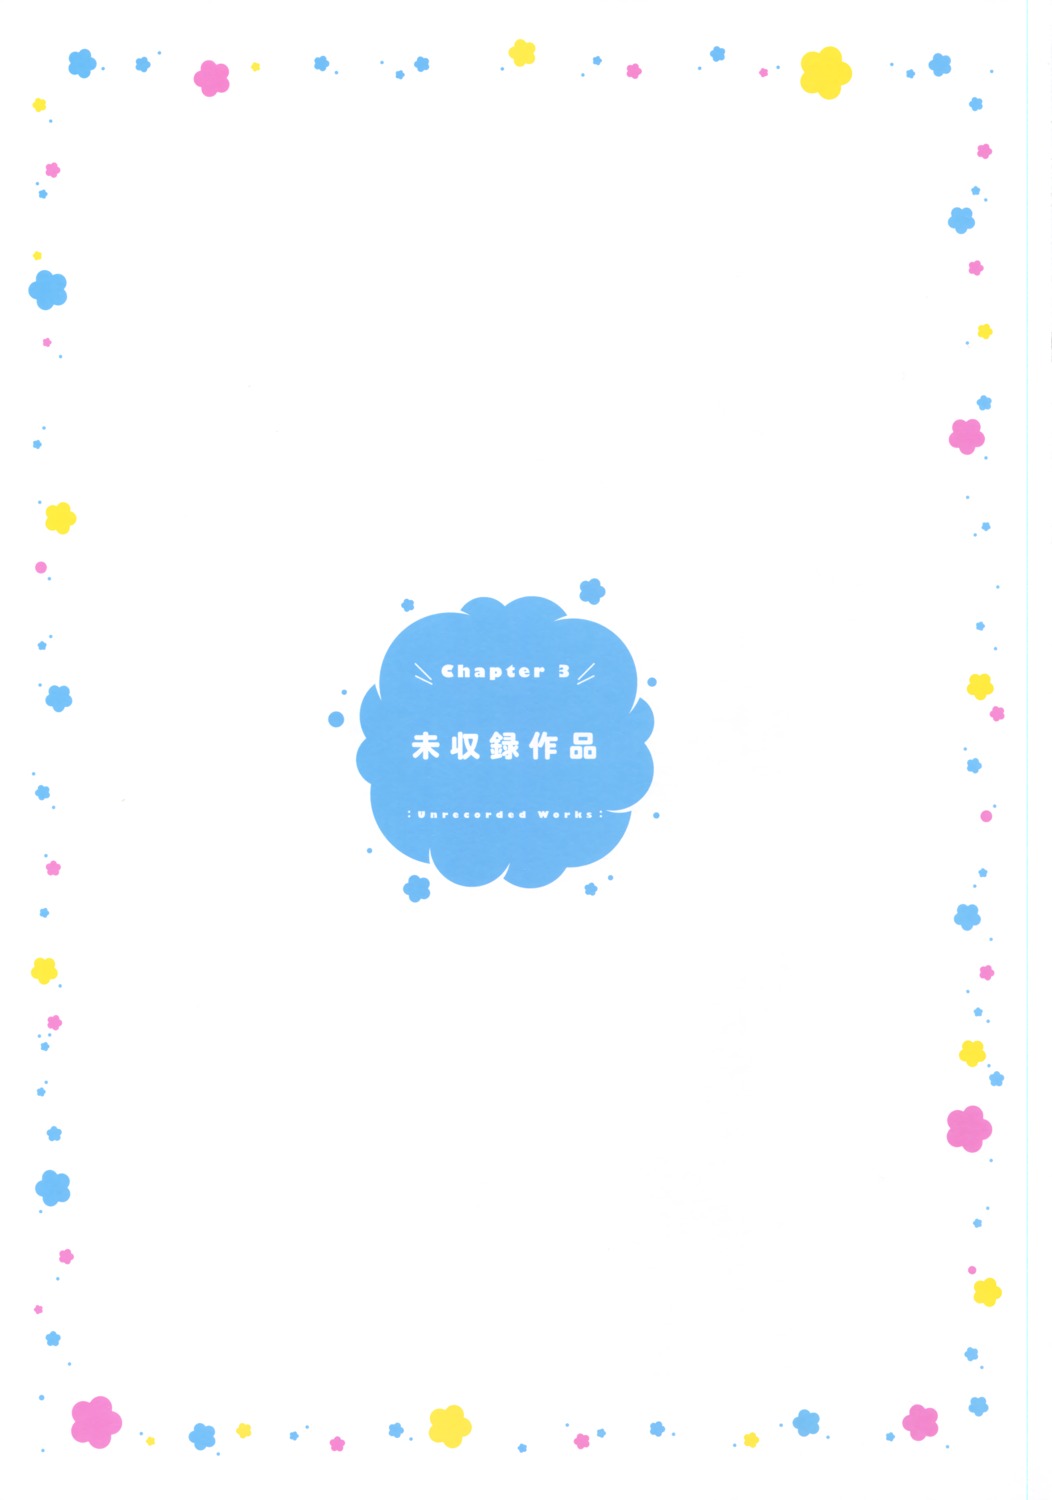 mitsuki_(mangaka) text